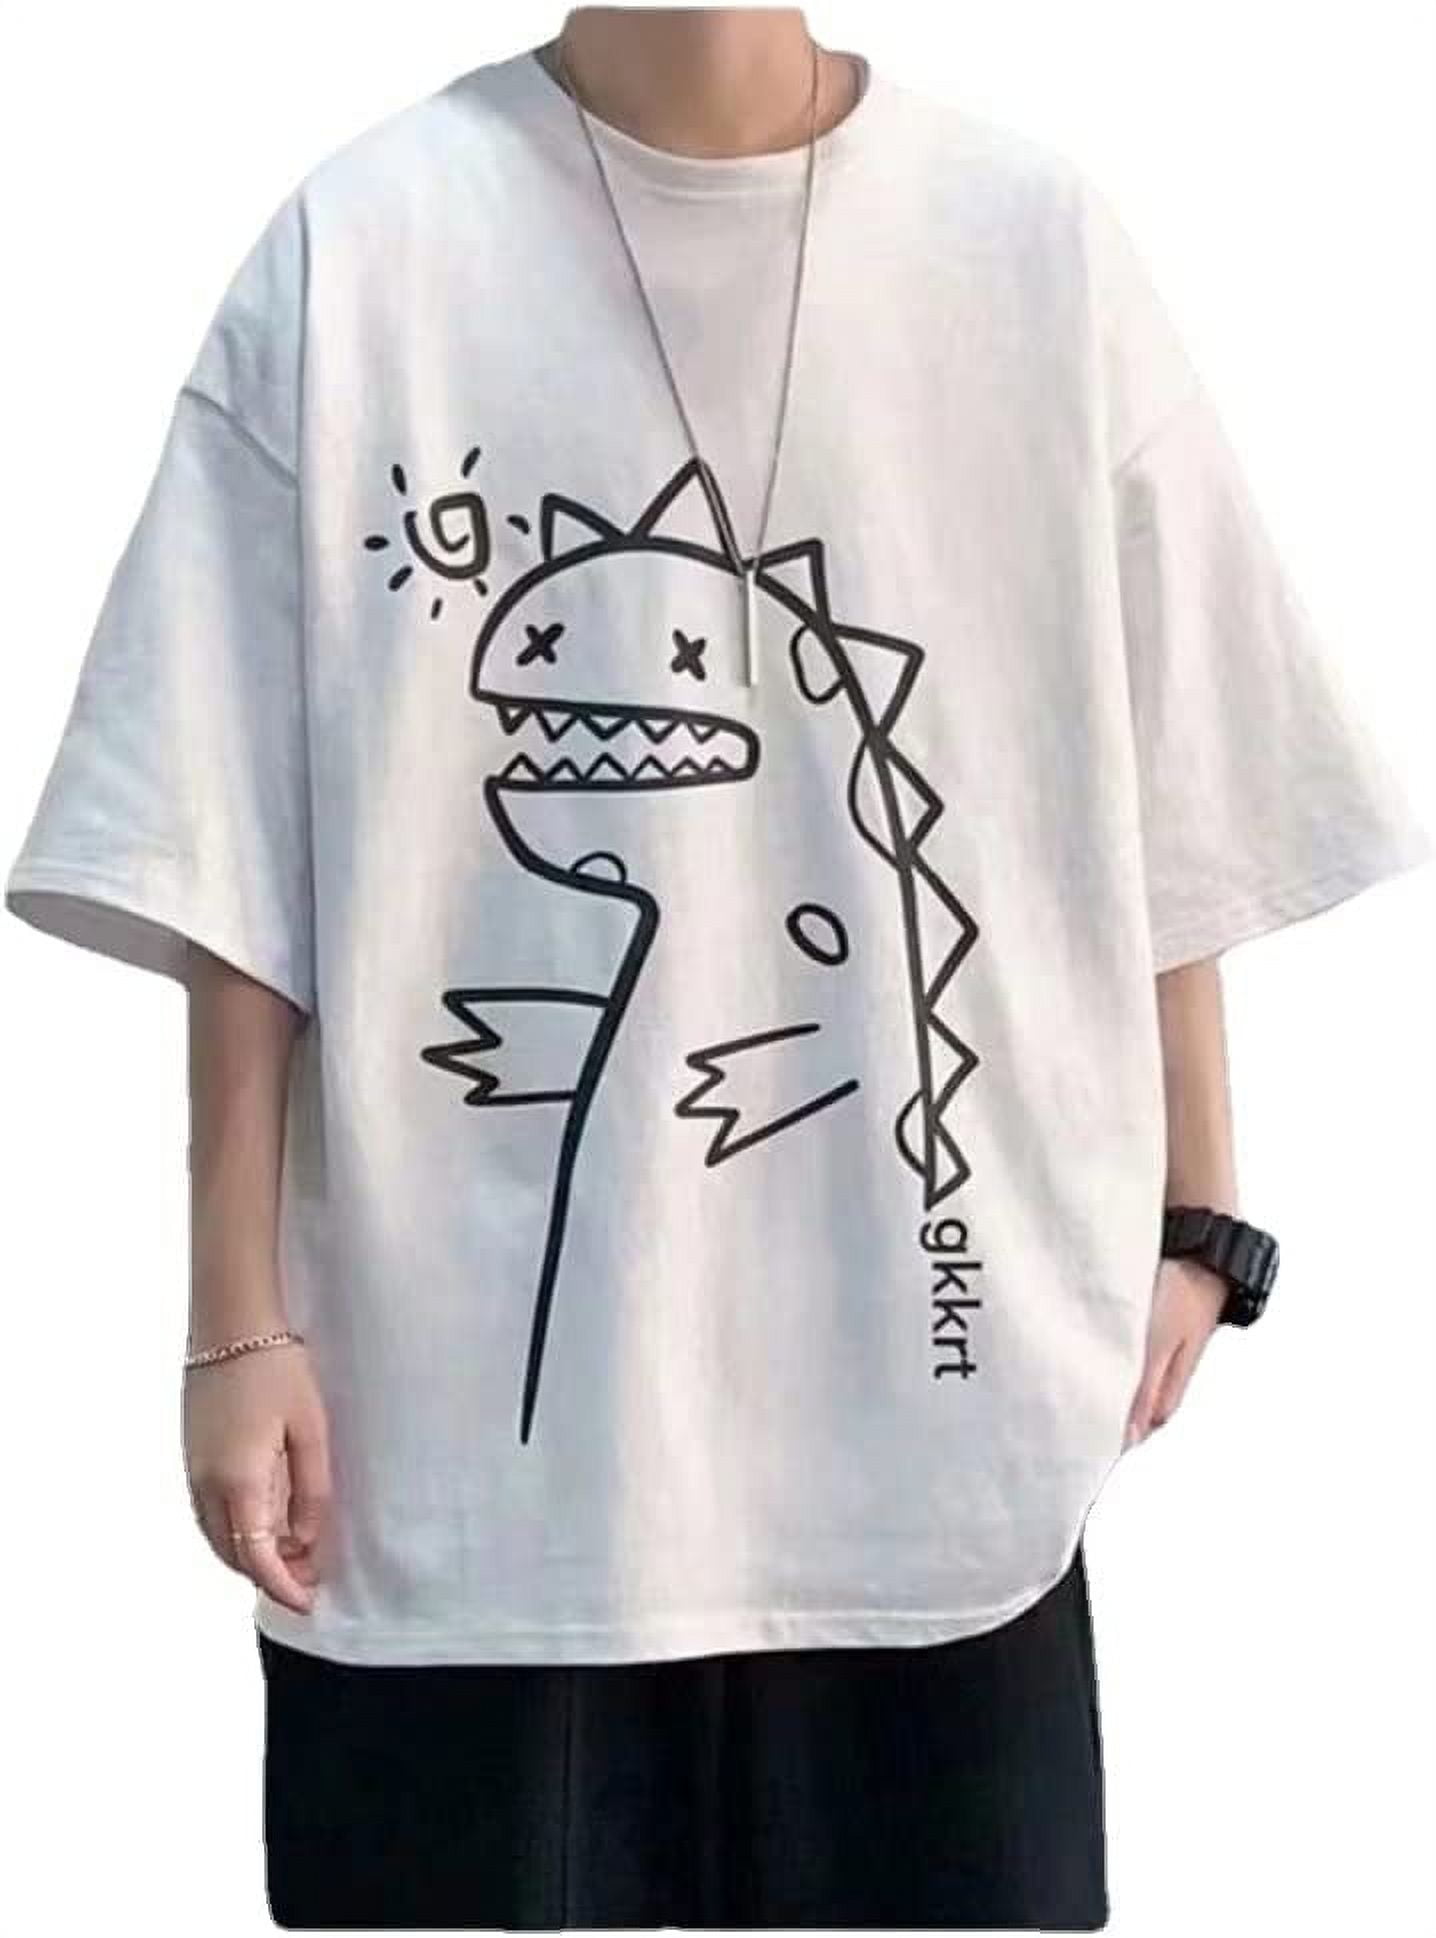 DanceeMangoo Kawaii Cute Shirts Tee for Teens Girls Cat Dino